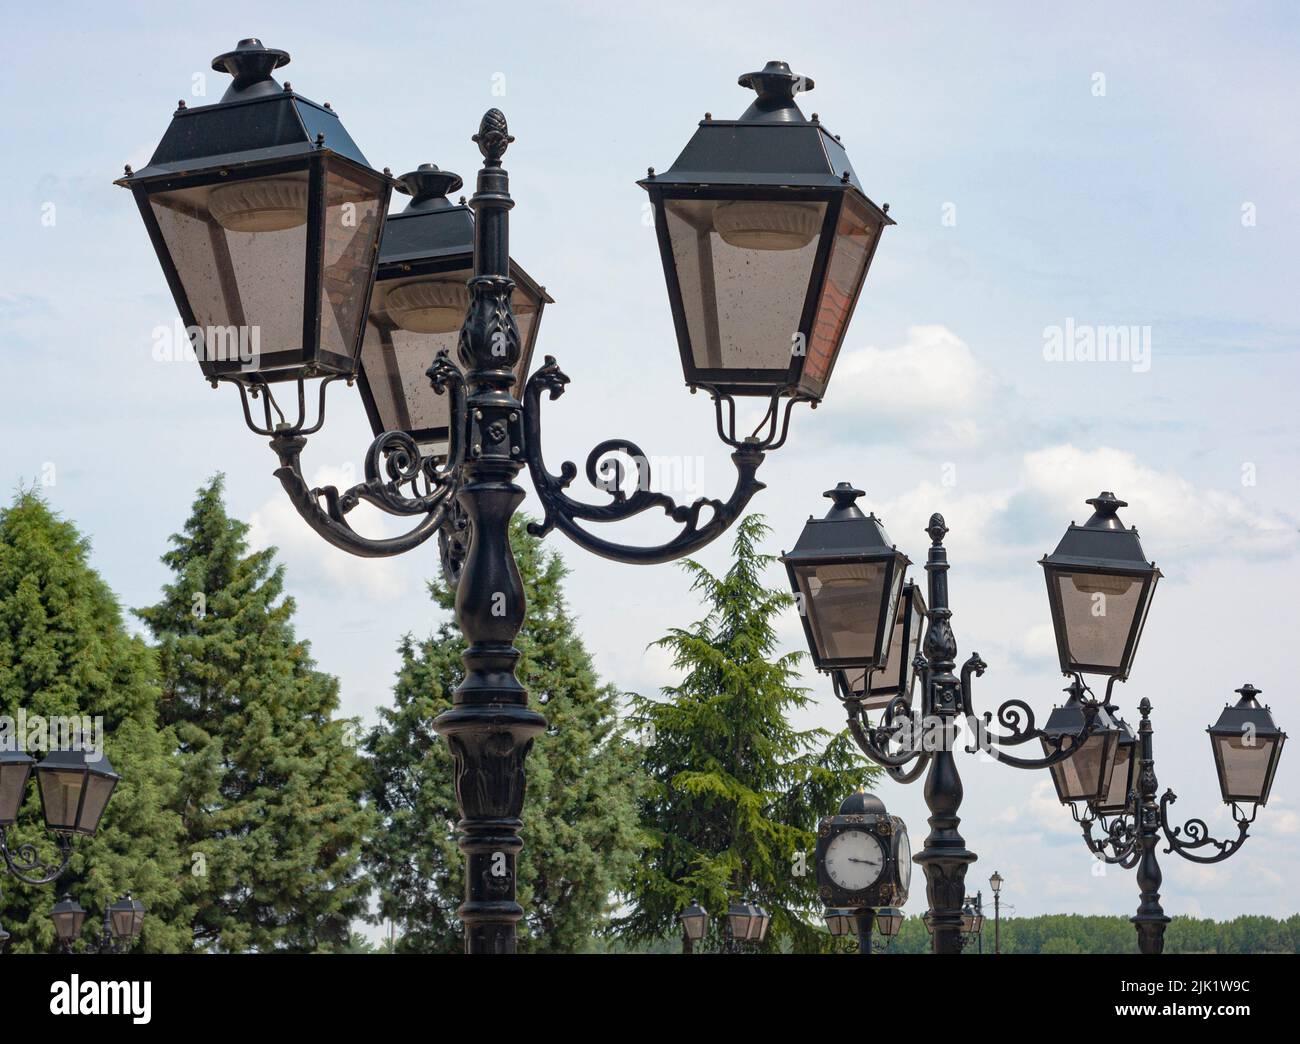 Dies ist die Innenstadt von Vidin, Bulgarien, einer Stadt am Rande der Donau. Die alten, schicken Laternenpfosten in einer Reihe schmücken das Geschäftsviertel der Stadt. Stockfoto